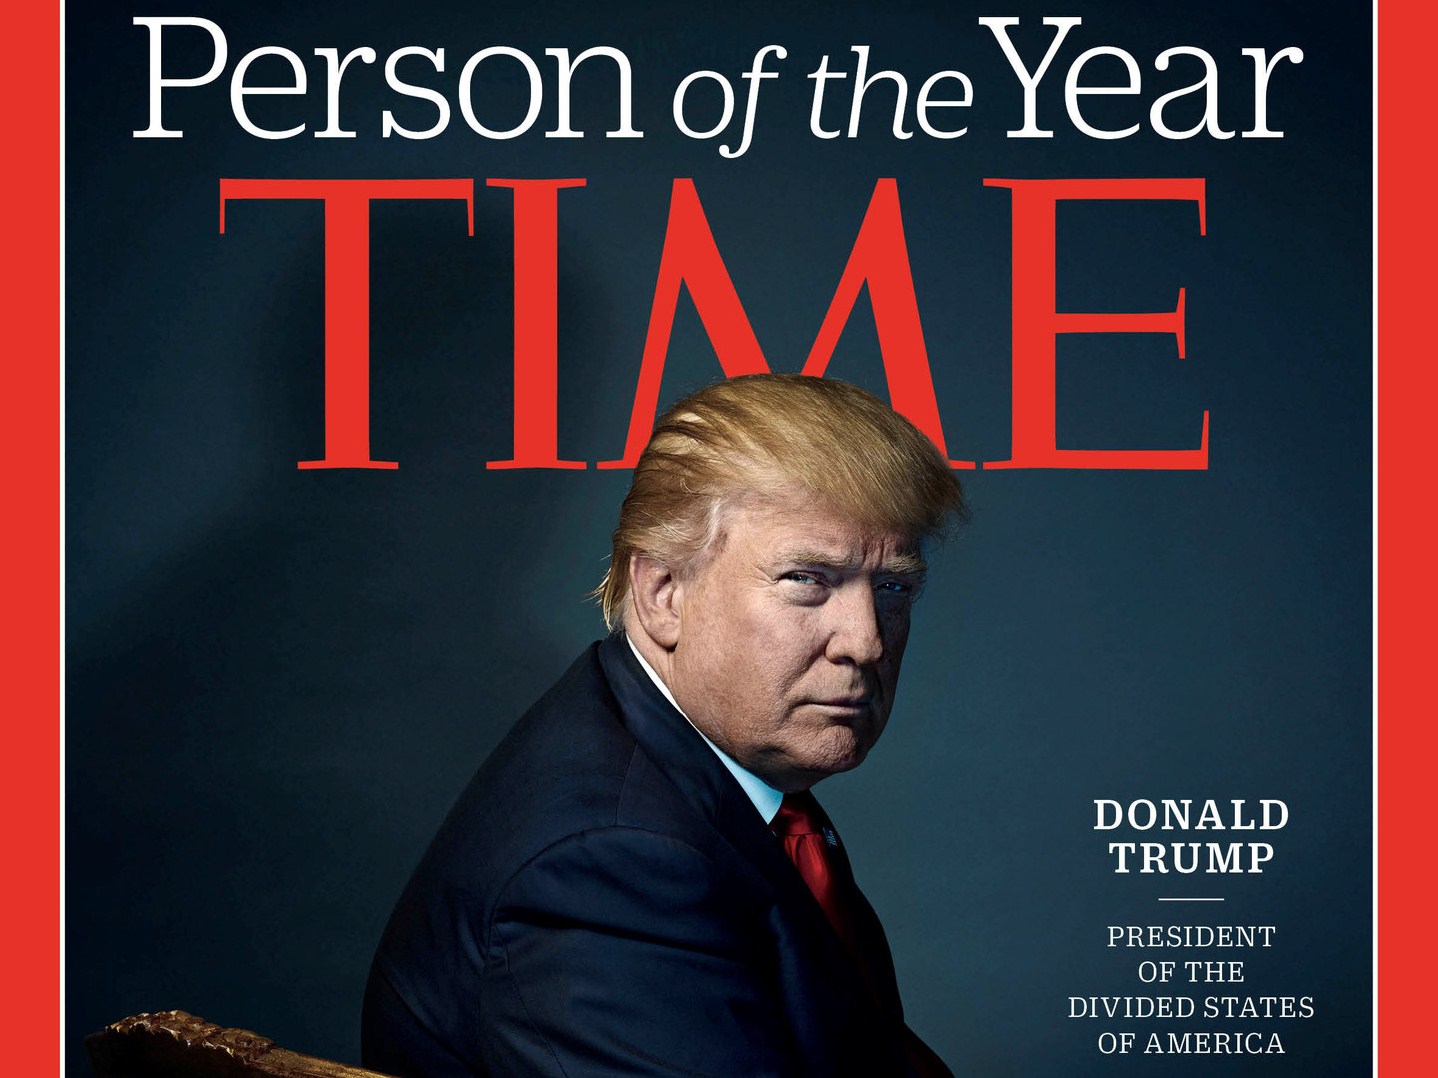 Итоги: журнал Time назвал новоизбранного президента США Дональда Трампа человеком года